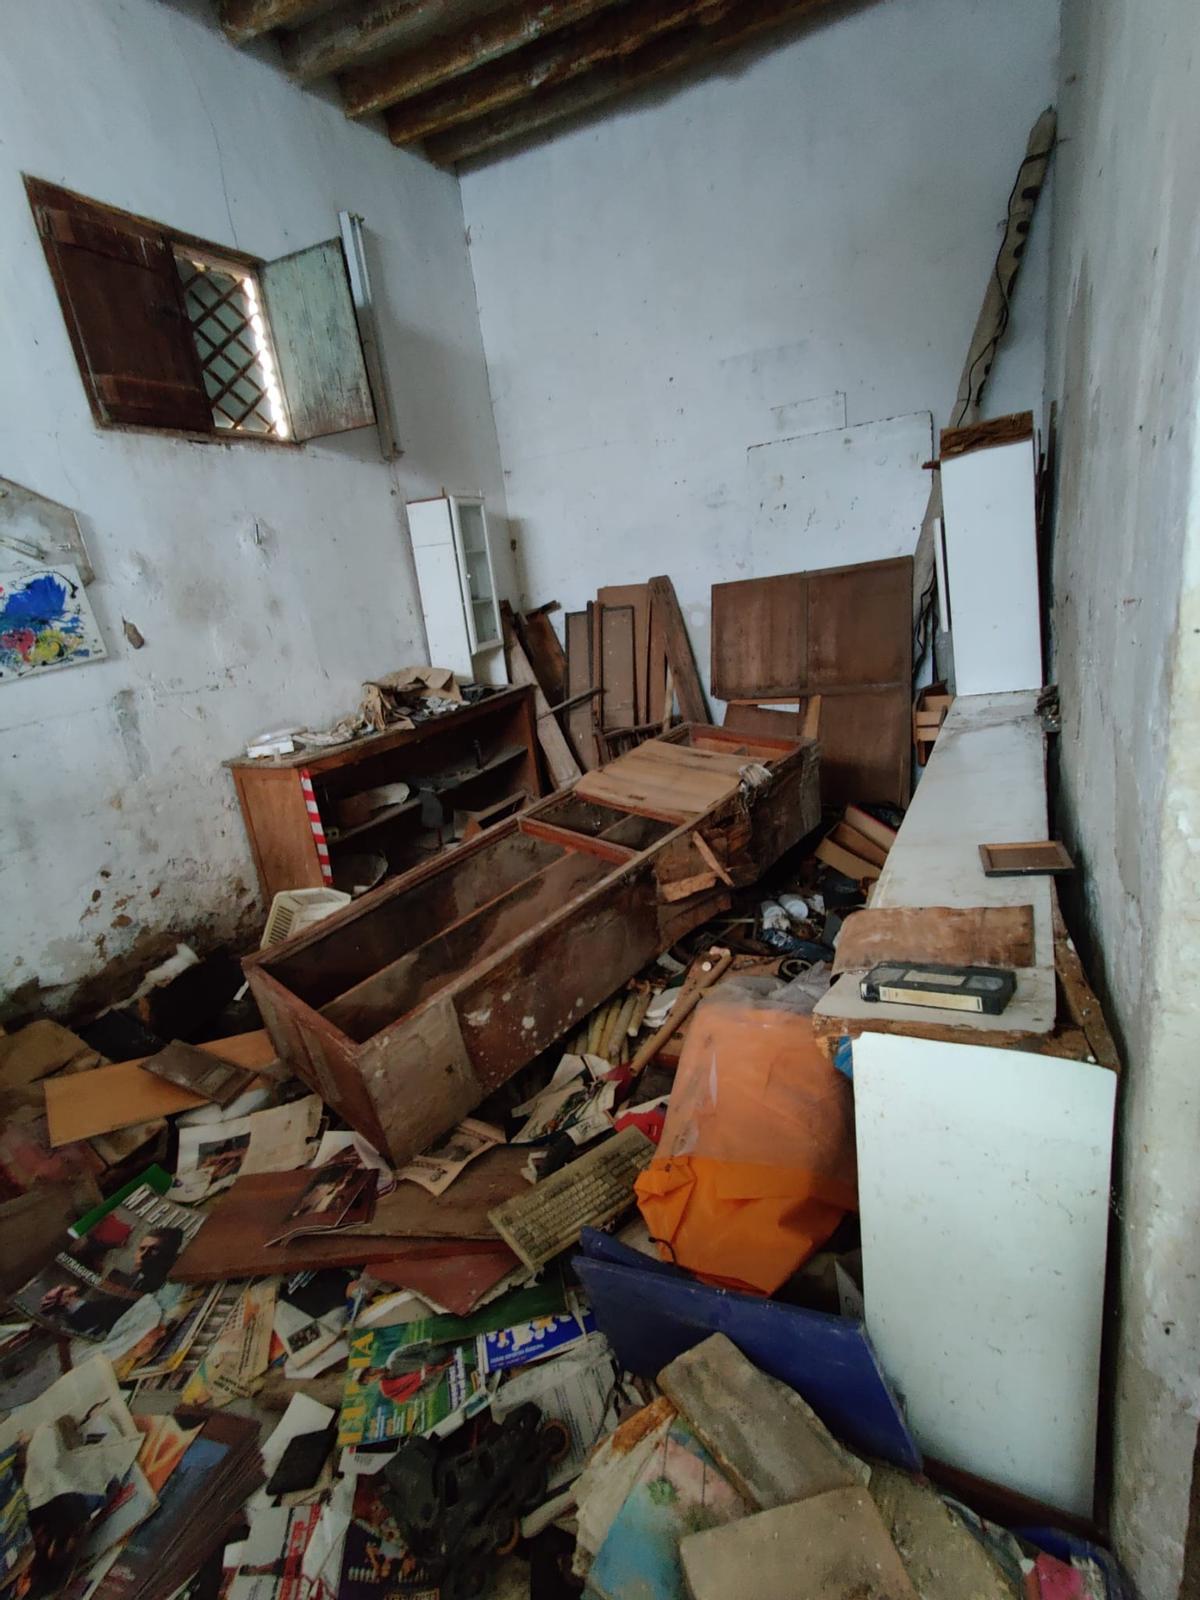 Mobiliario destrozado en el interior de la casa.